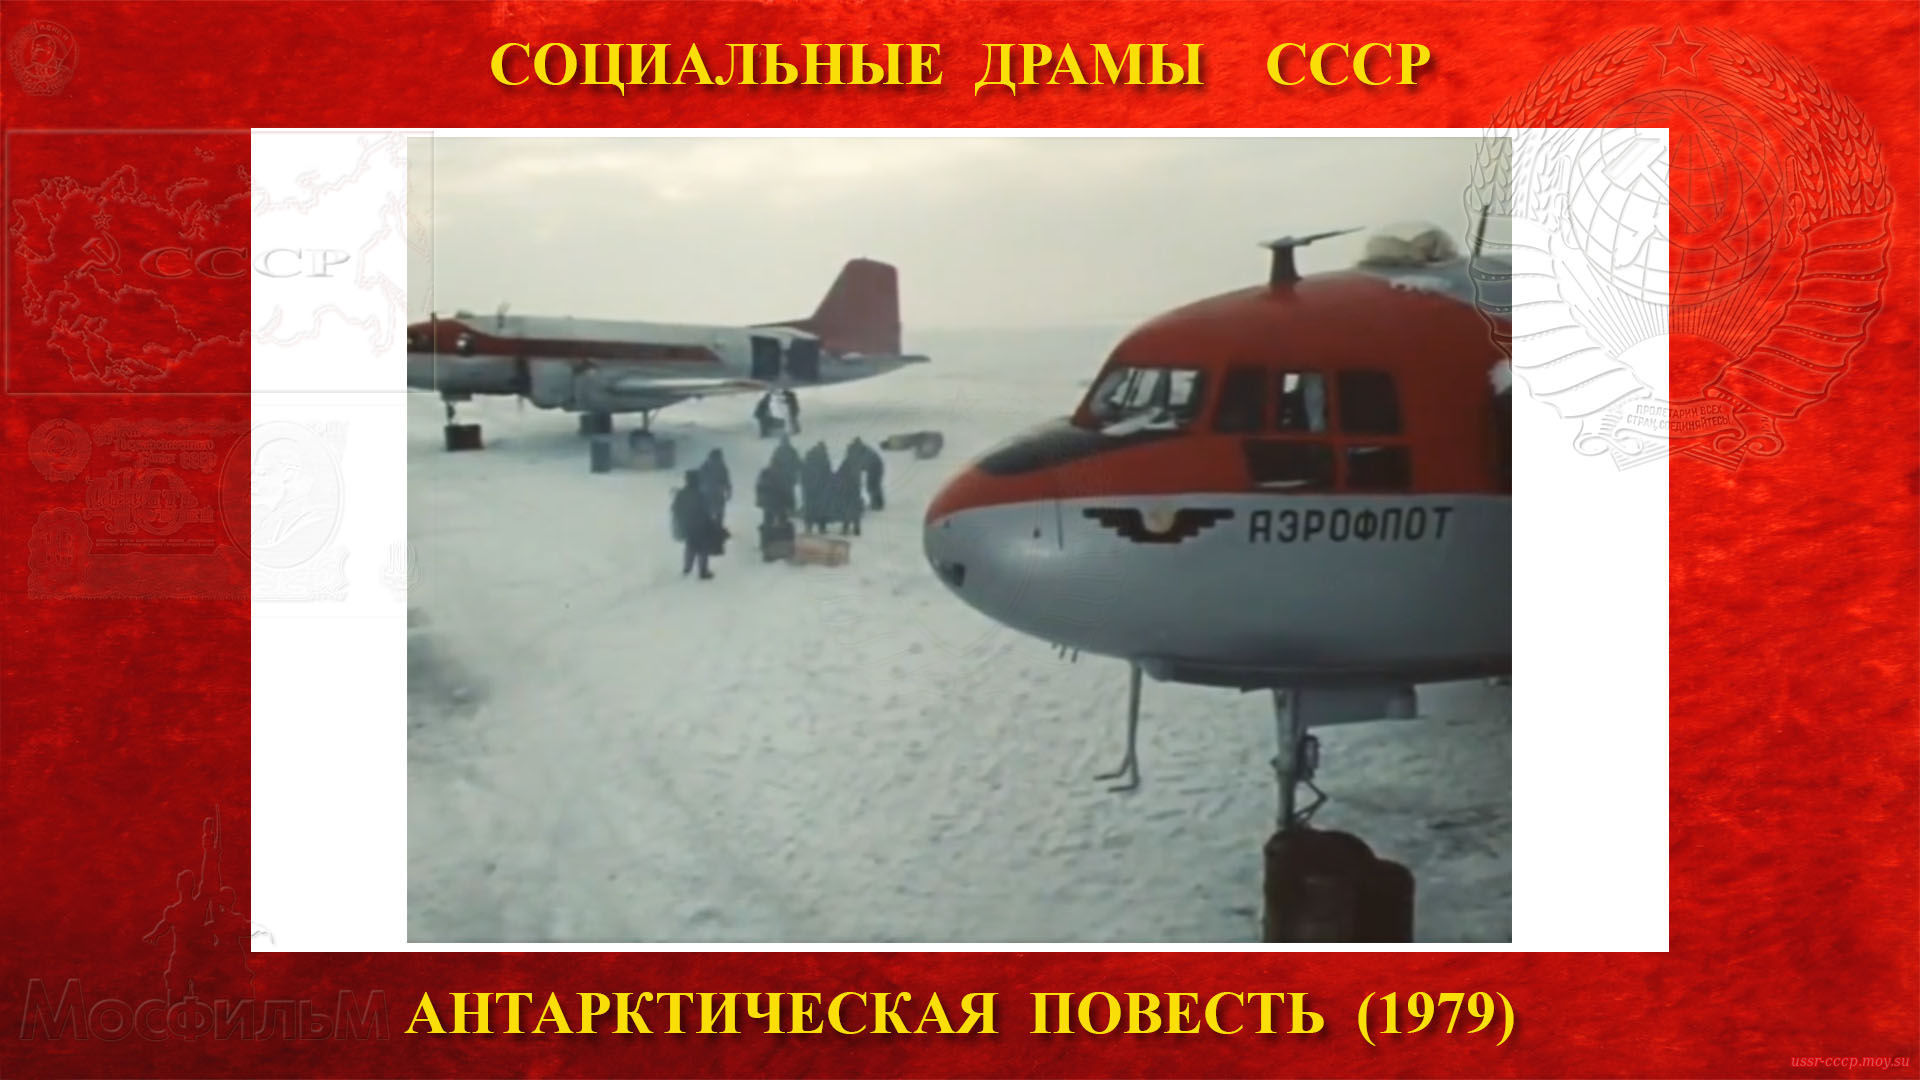 Антарктическая повесть — Пятеро полярников покидают станцию «Восток» и летят в Лазарево на самолётах Ил-14 борт СССР-04180, оставив станцию новой группе полярников. 